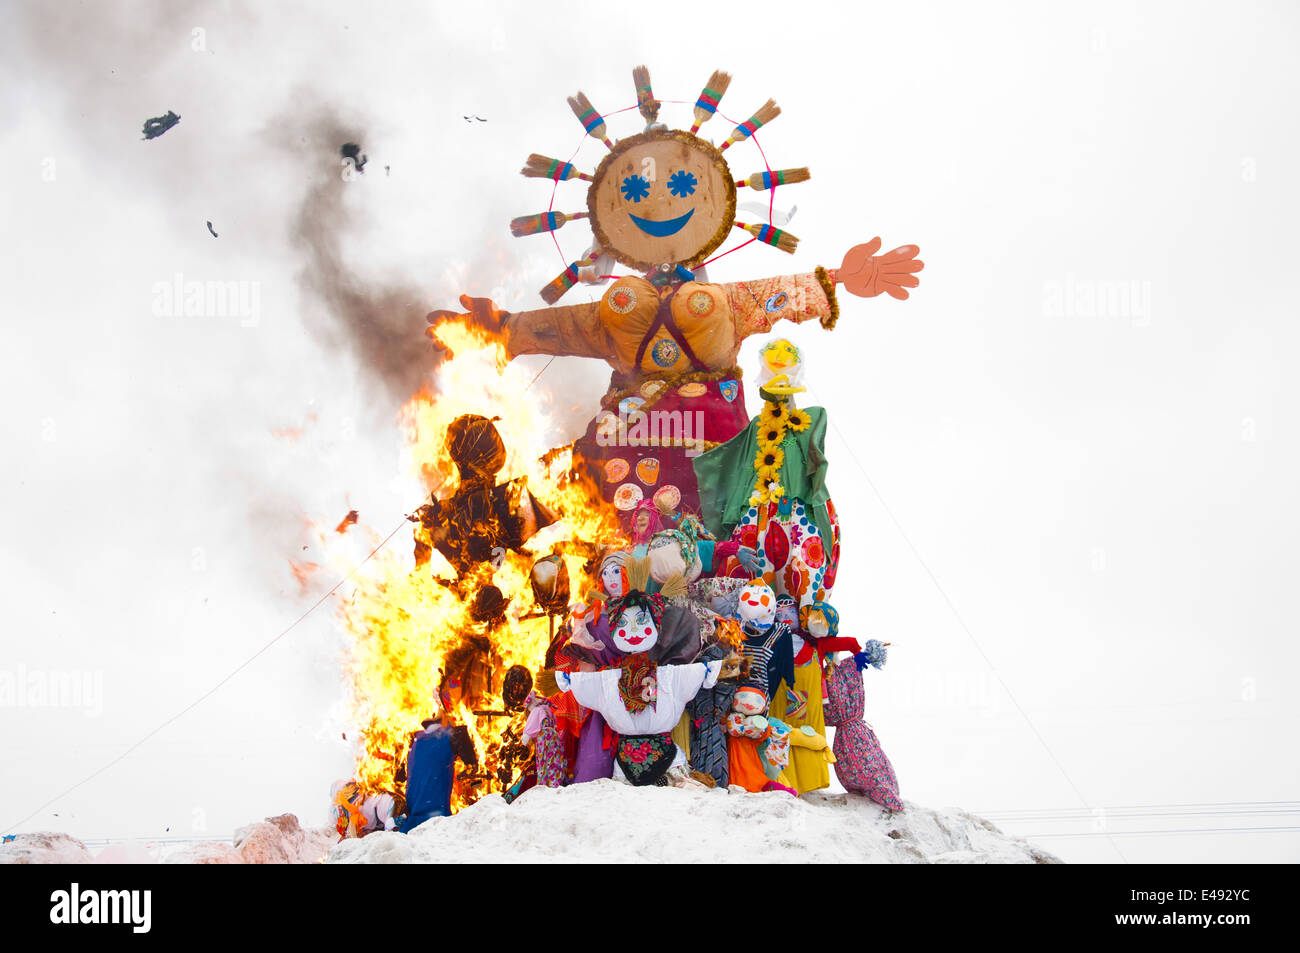 Maslenitsa Urlaub Folk russischen zu Fuß Orthodoxie christlicher Puppe Lappen Stofftier Feuer brennen Symbol sehen Winter Spaß Tradition Stockfoto